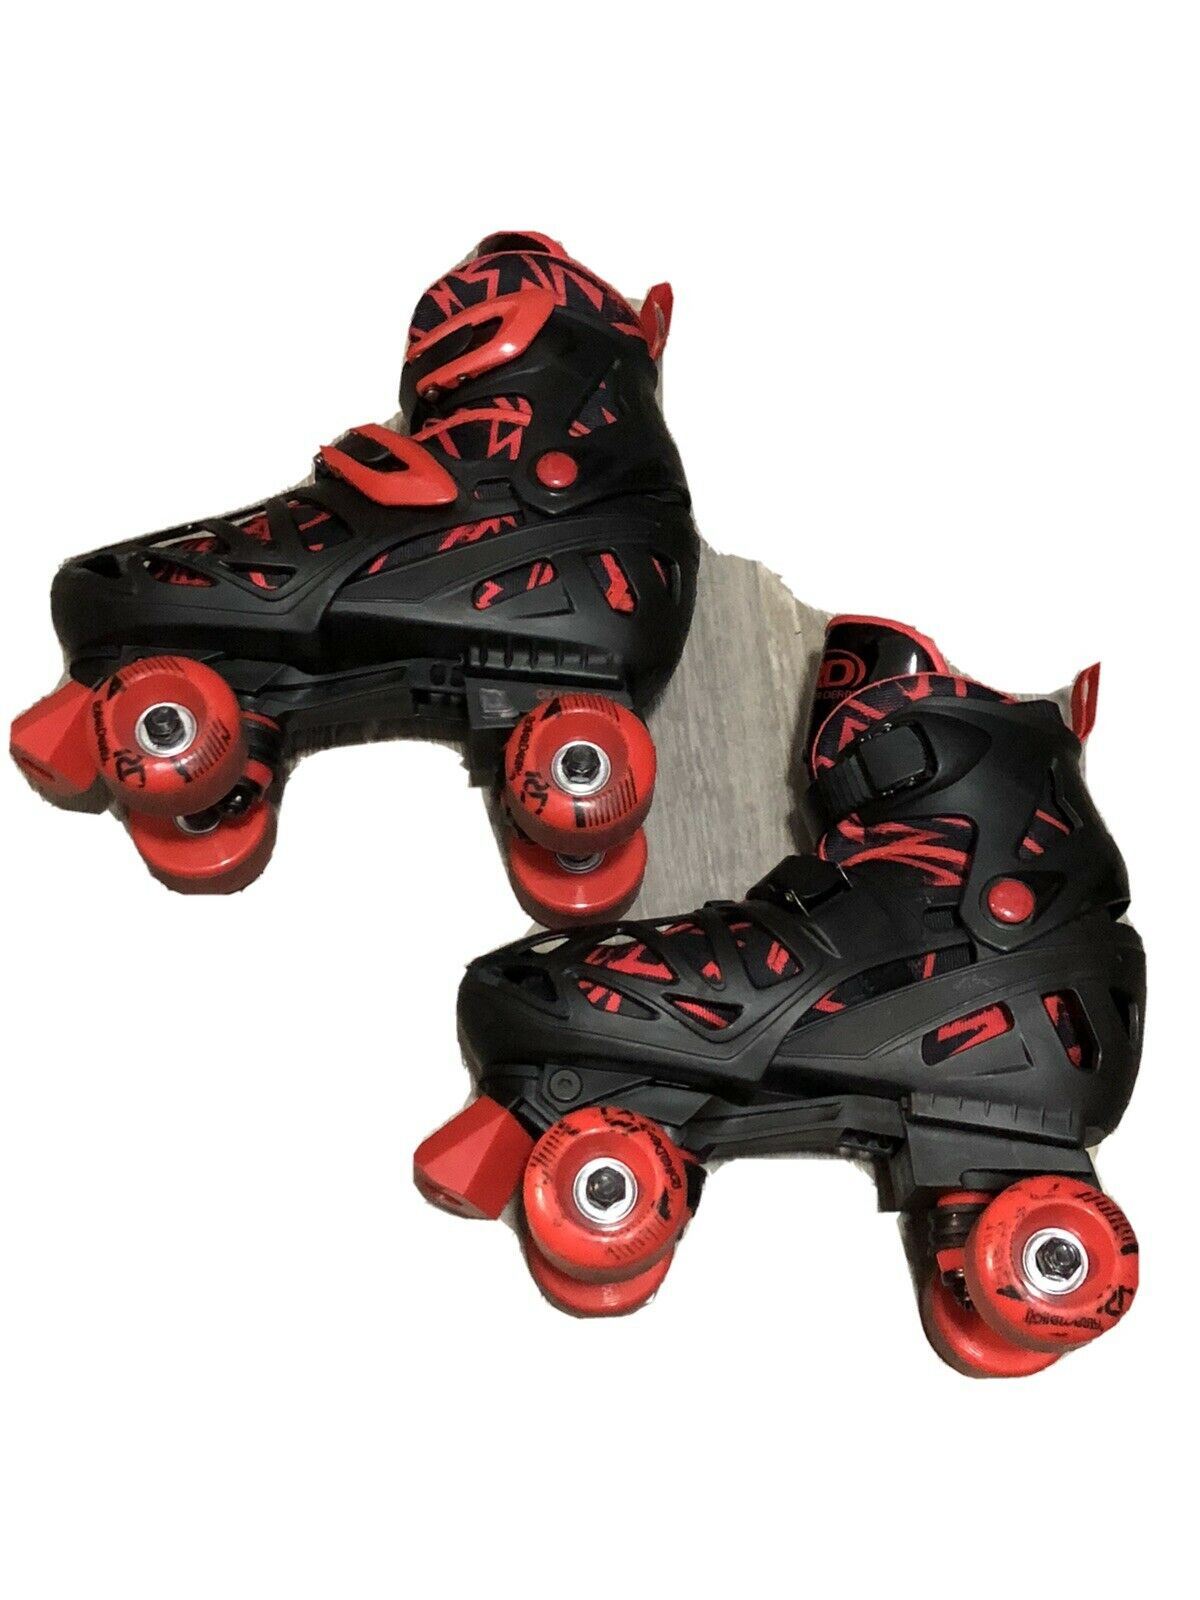 Roller Derby Boy's Adjustable Size 3-6 Roller Skates Black Red